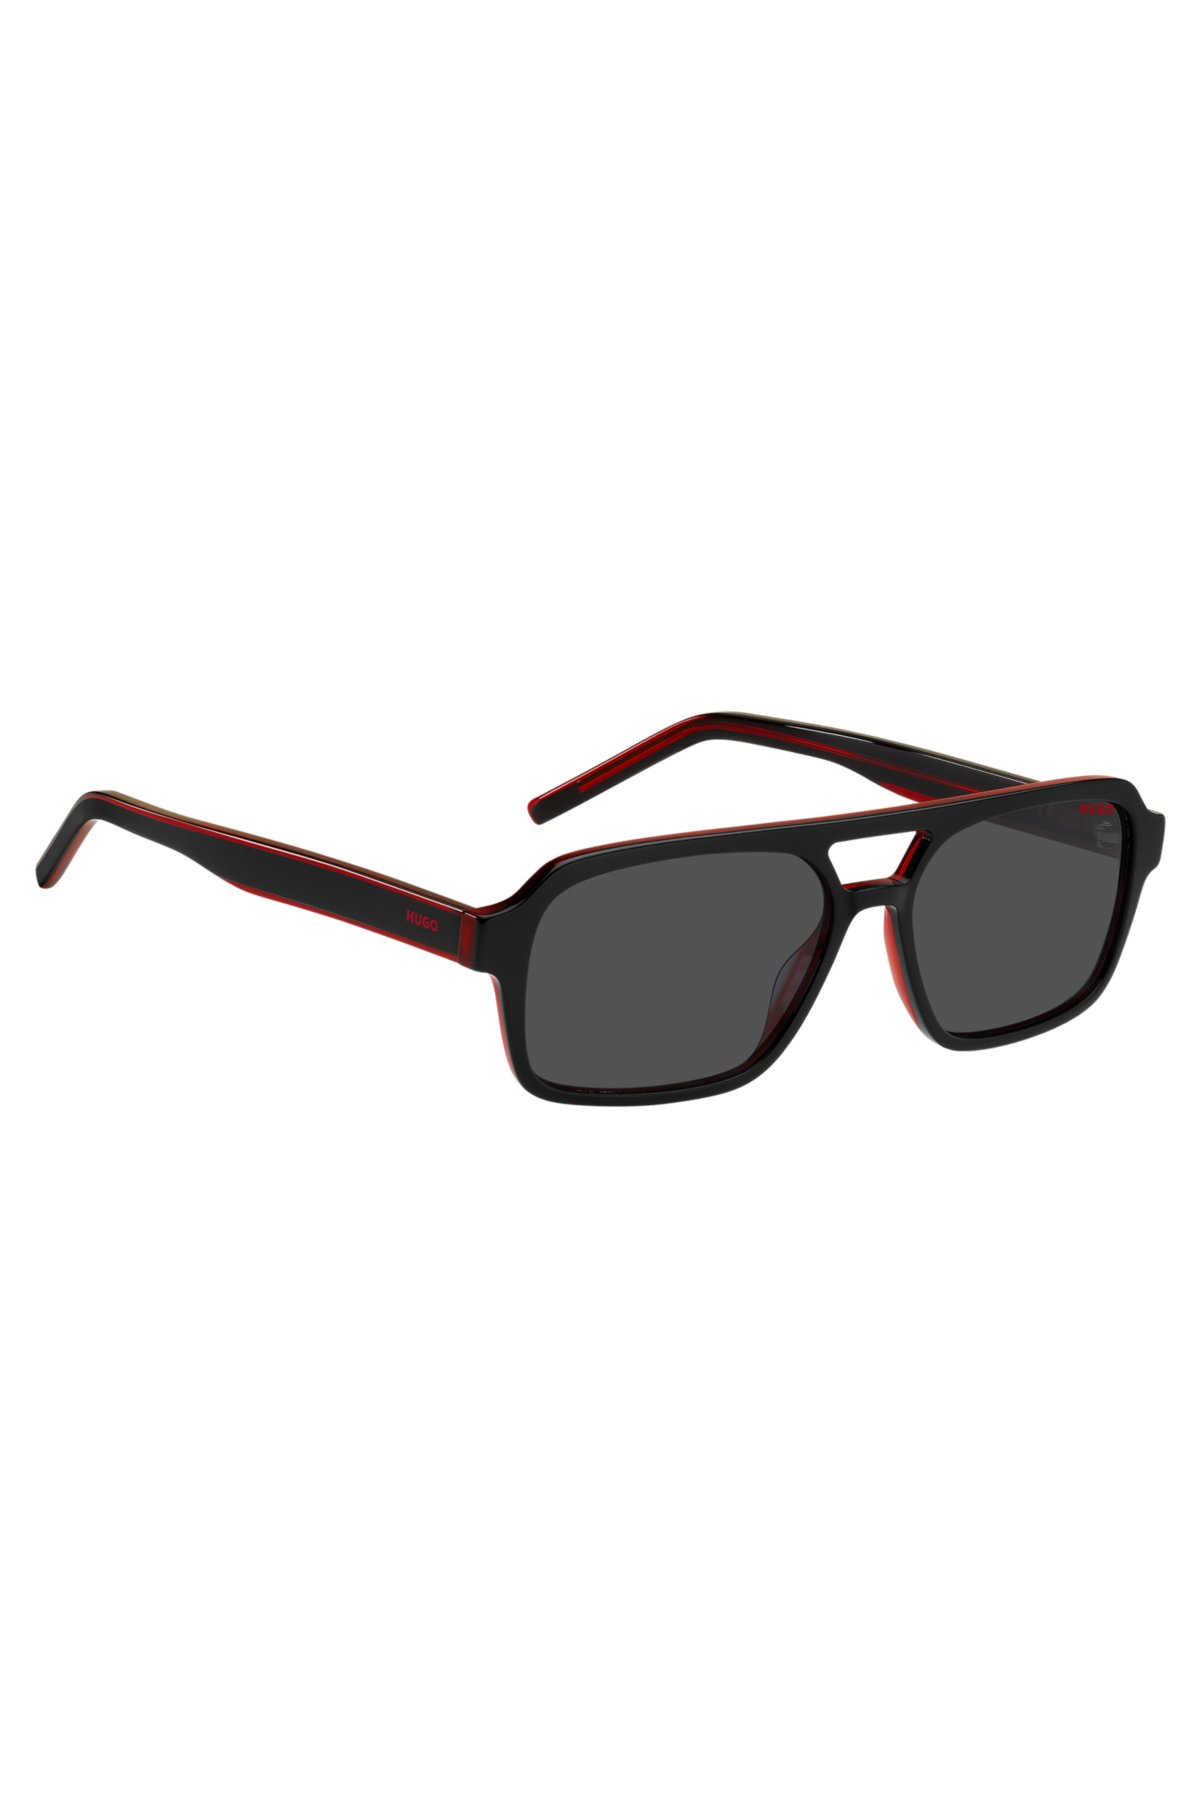 HUGO - solbriller sort rødt acetat